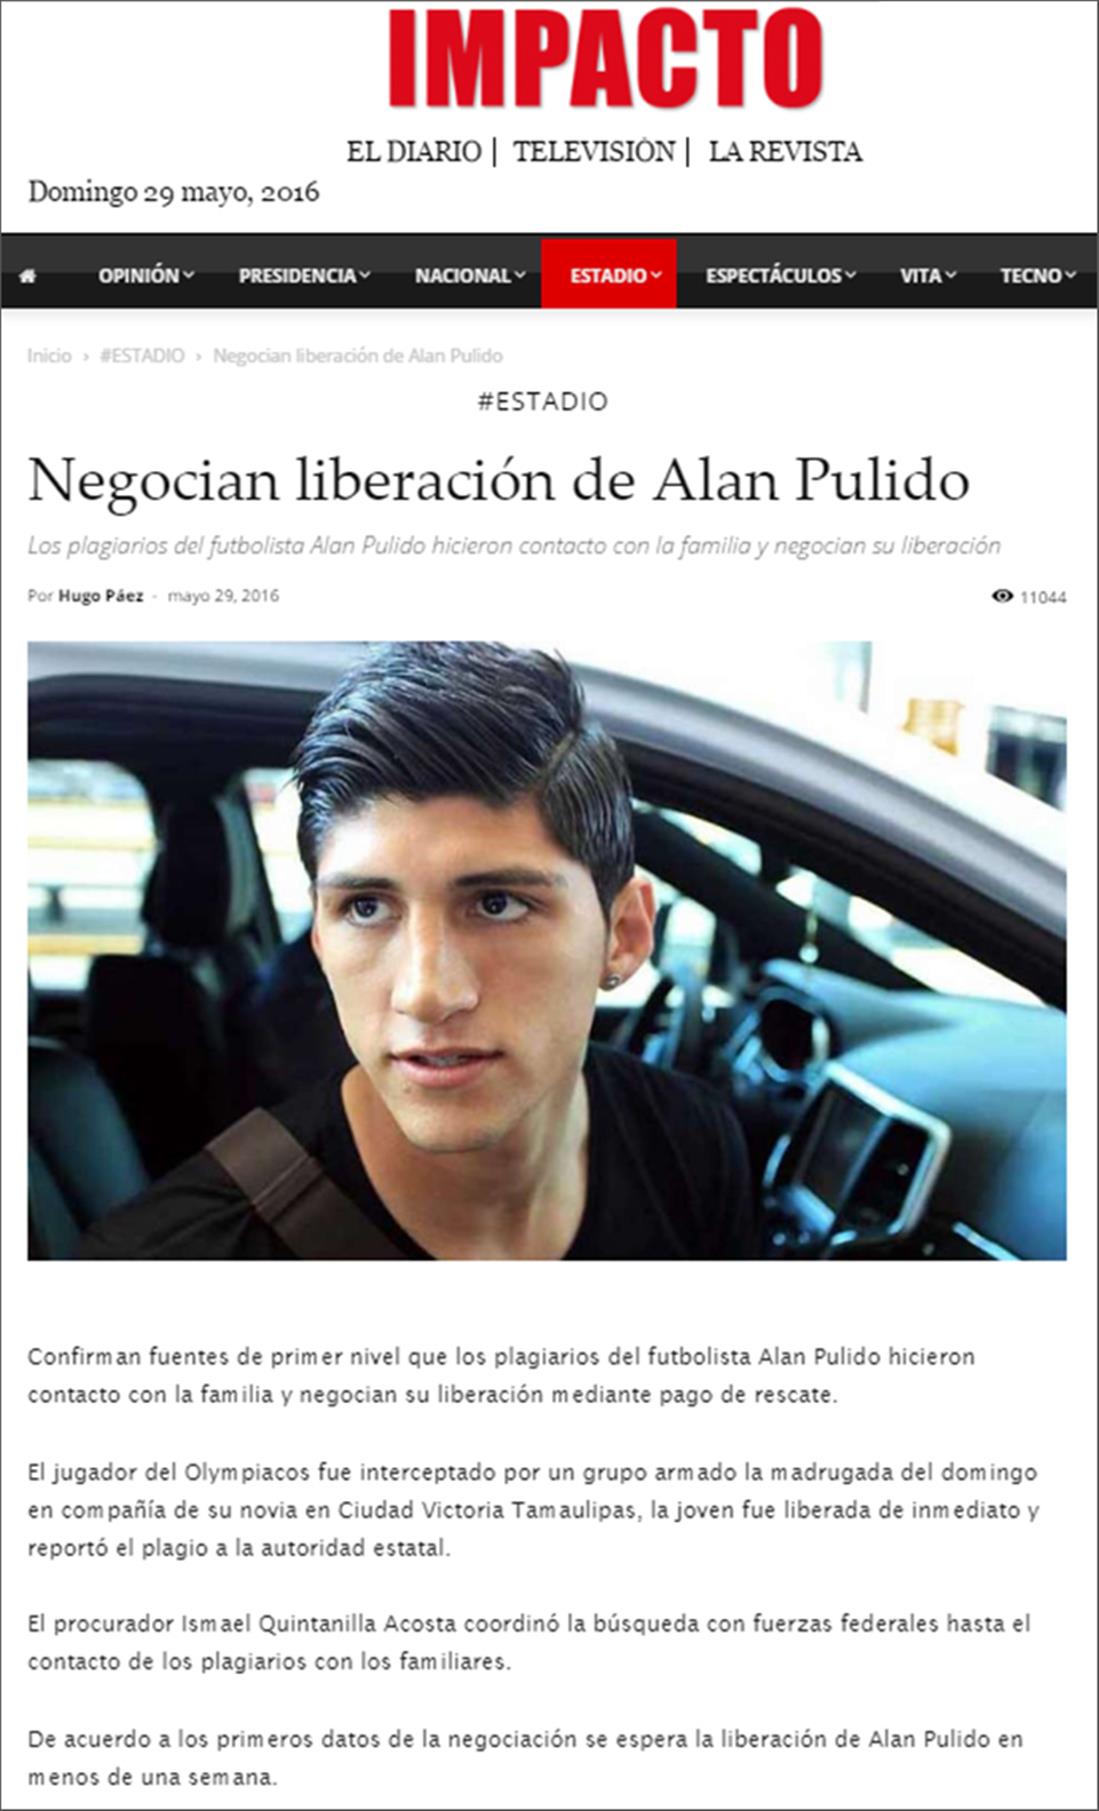 Άλαν Πουλίδο - δημοσίευμα - Impacto